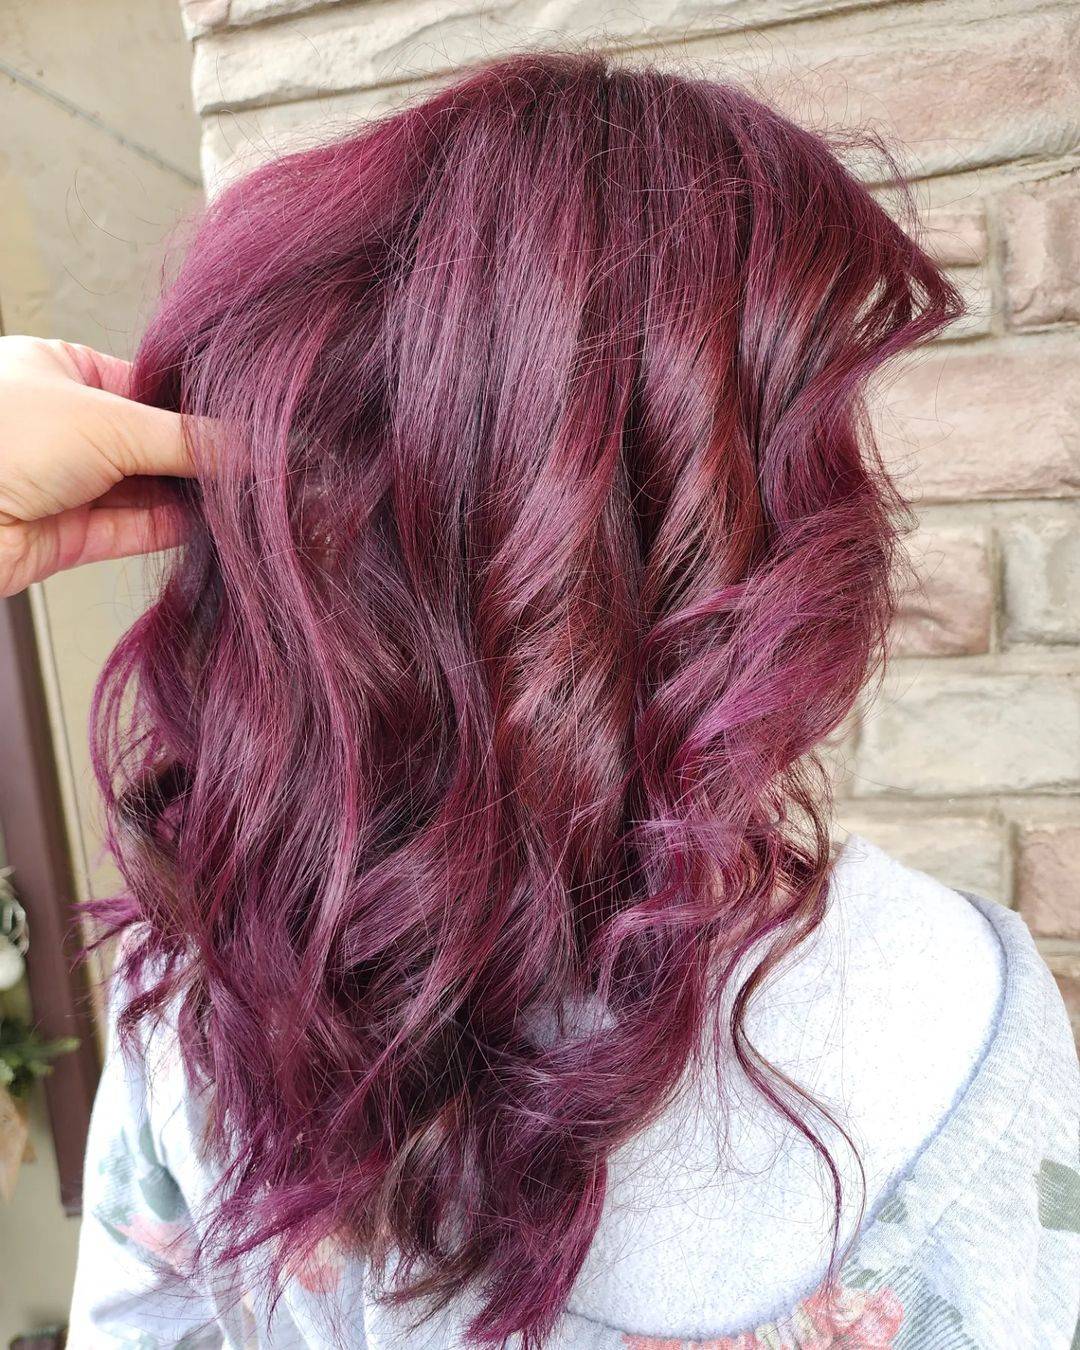 Burgundy hair color 202 burgundy hair color | burgundy hair color for women | burgundy hair color highlights Burgundy Hair Color